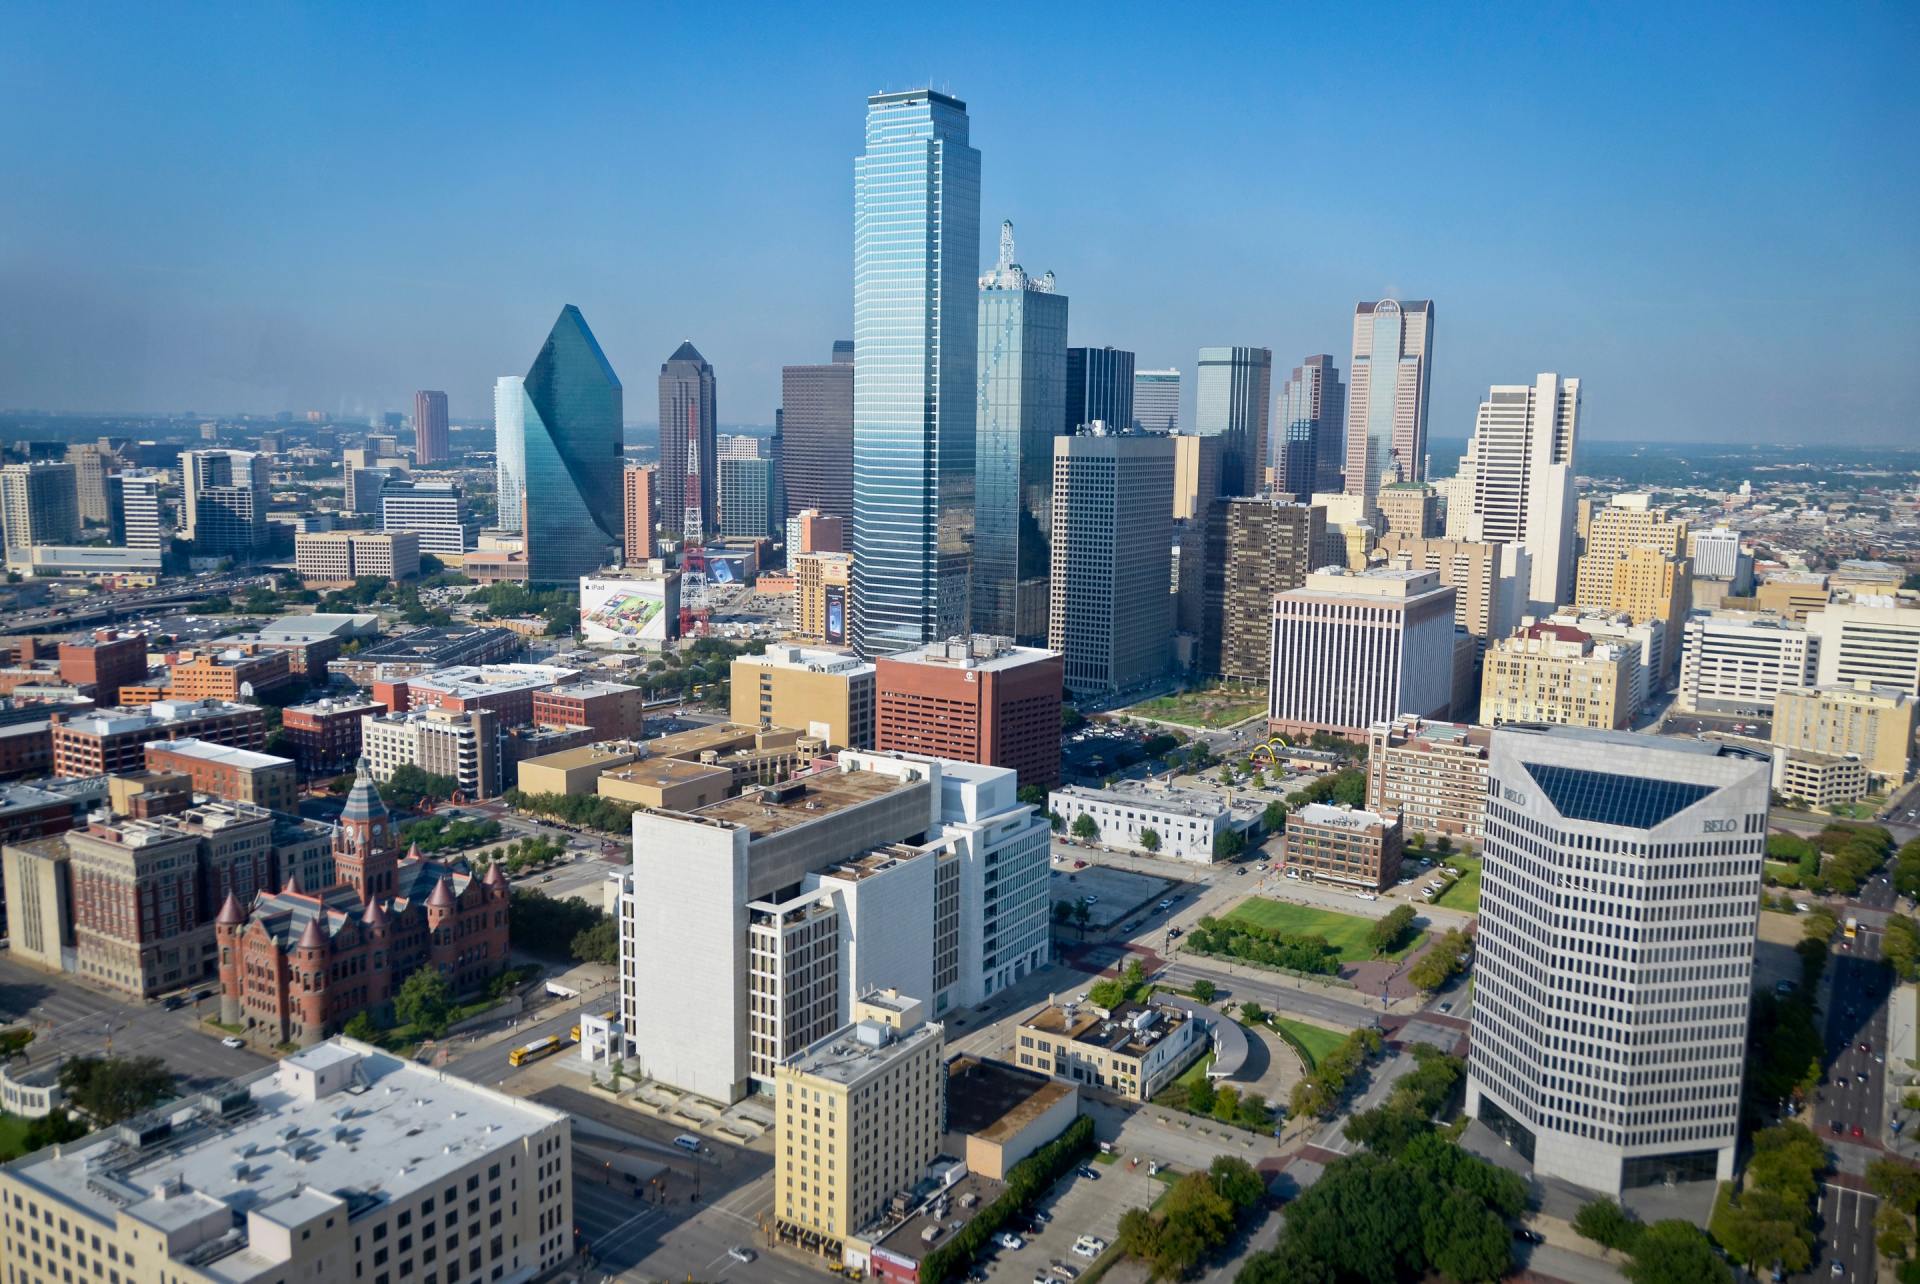 Dallas cityscape